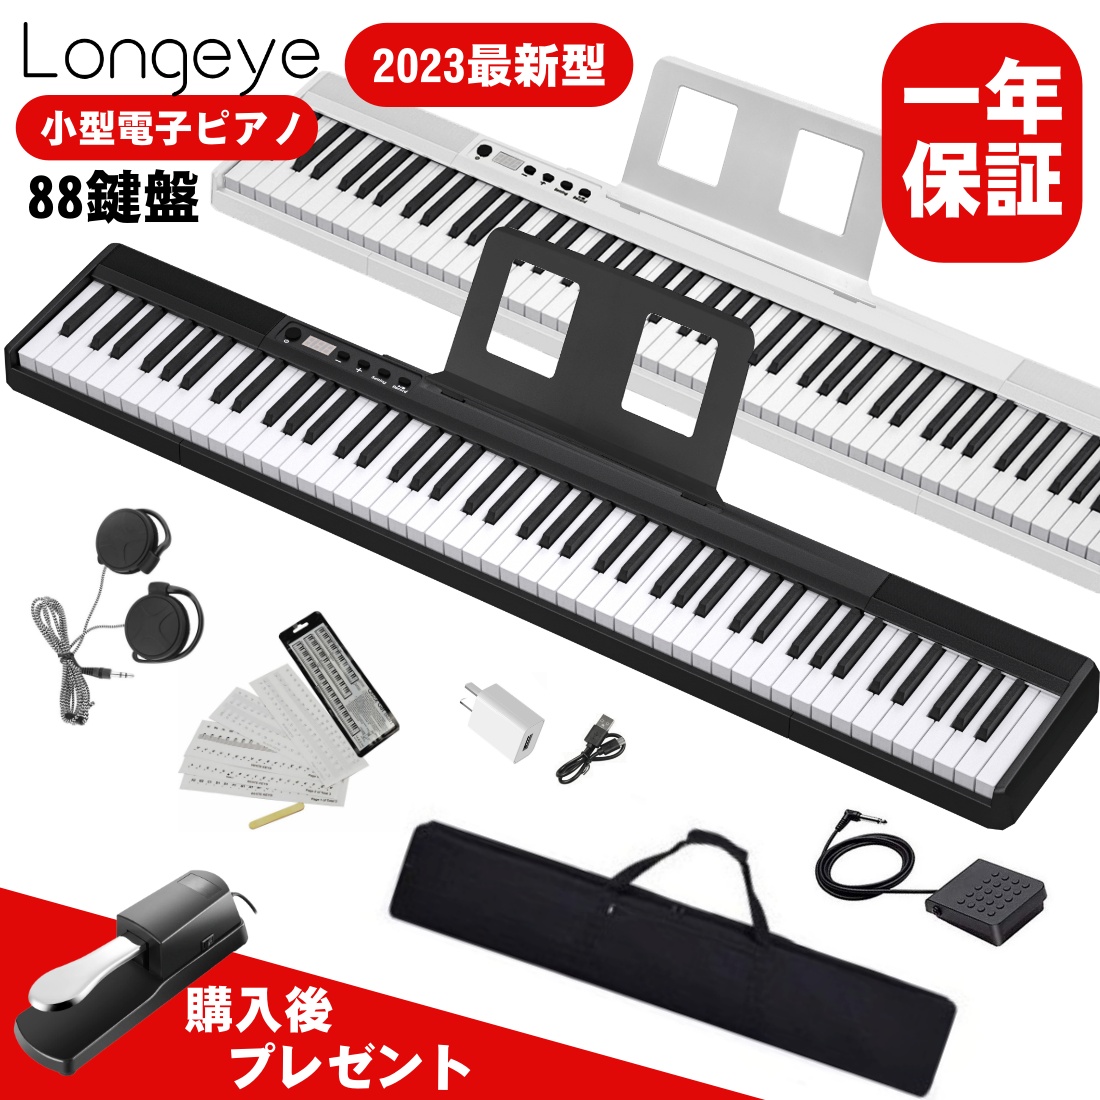 【楽天市場】【即納】【最新モデル Longeye製 】電子ピアノ 88鍵盤 